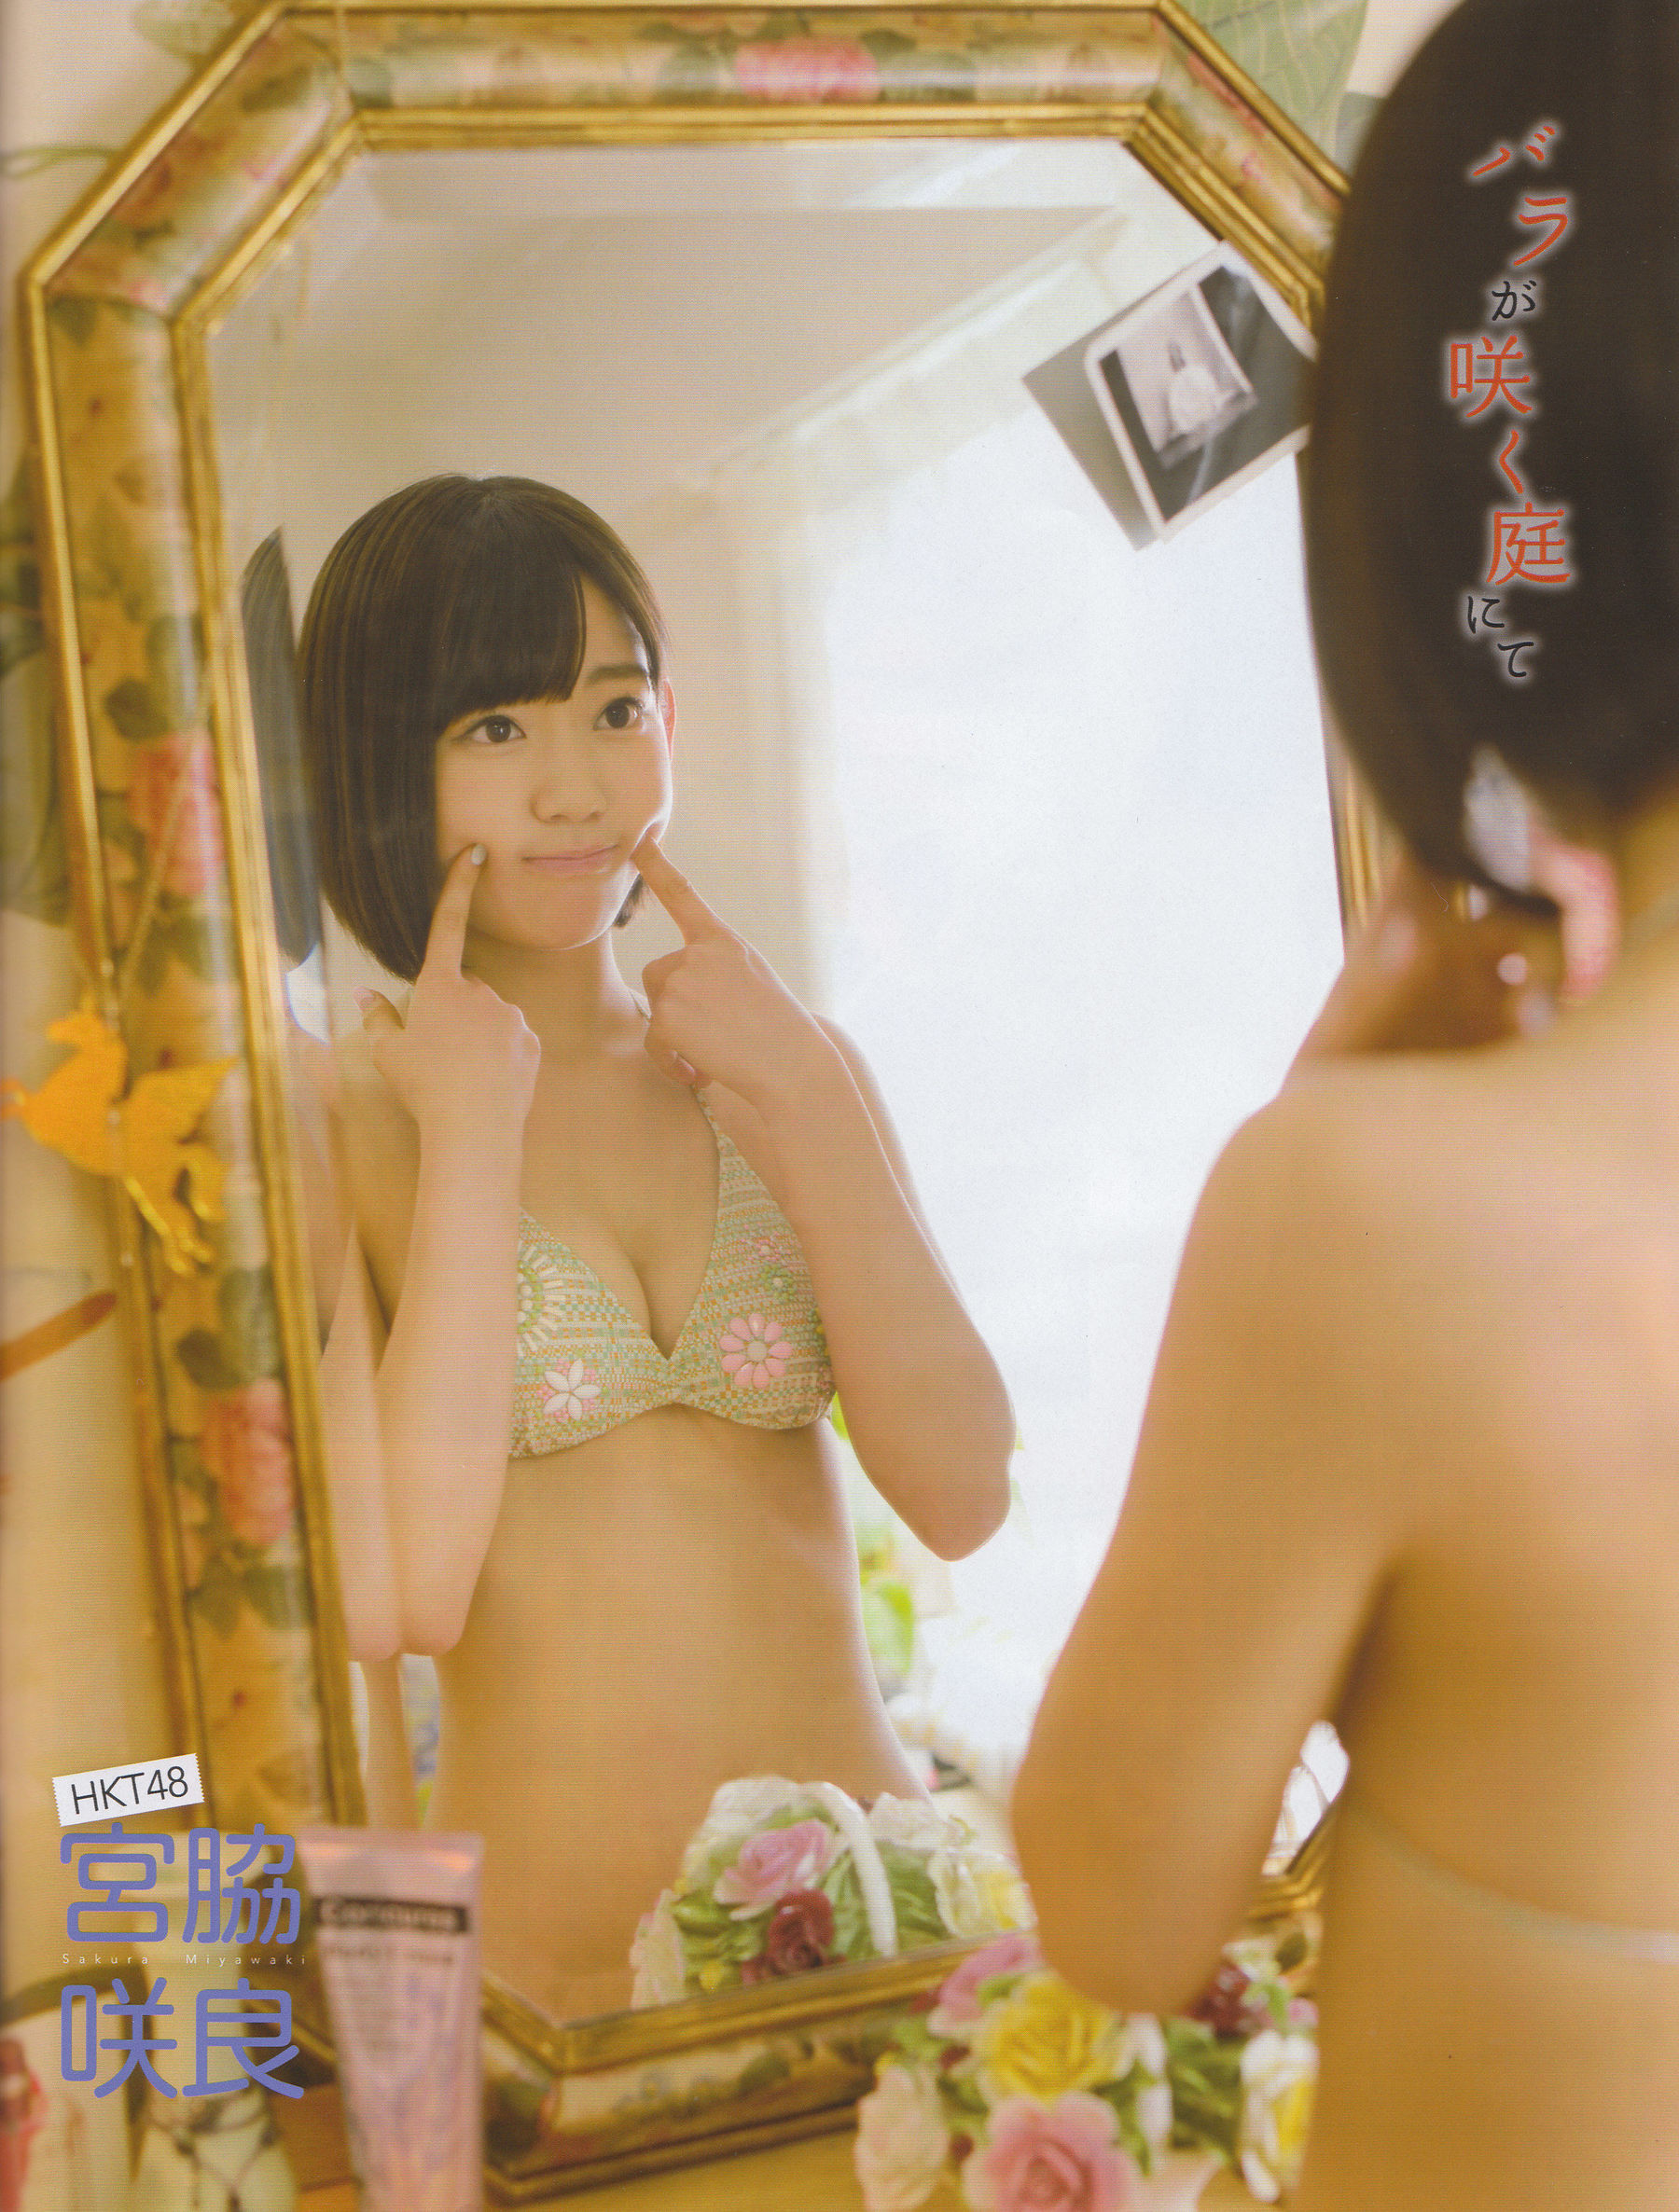 [EX Taishu] Yokoyama Yui, Miyawaki Sakura, Matsumura Sa Yuri 2014 Magazine photo n ° 06